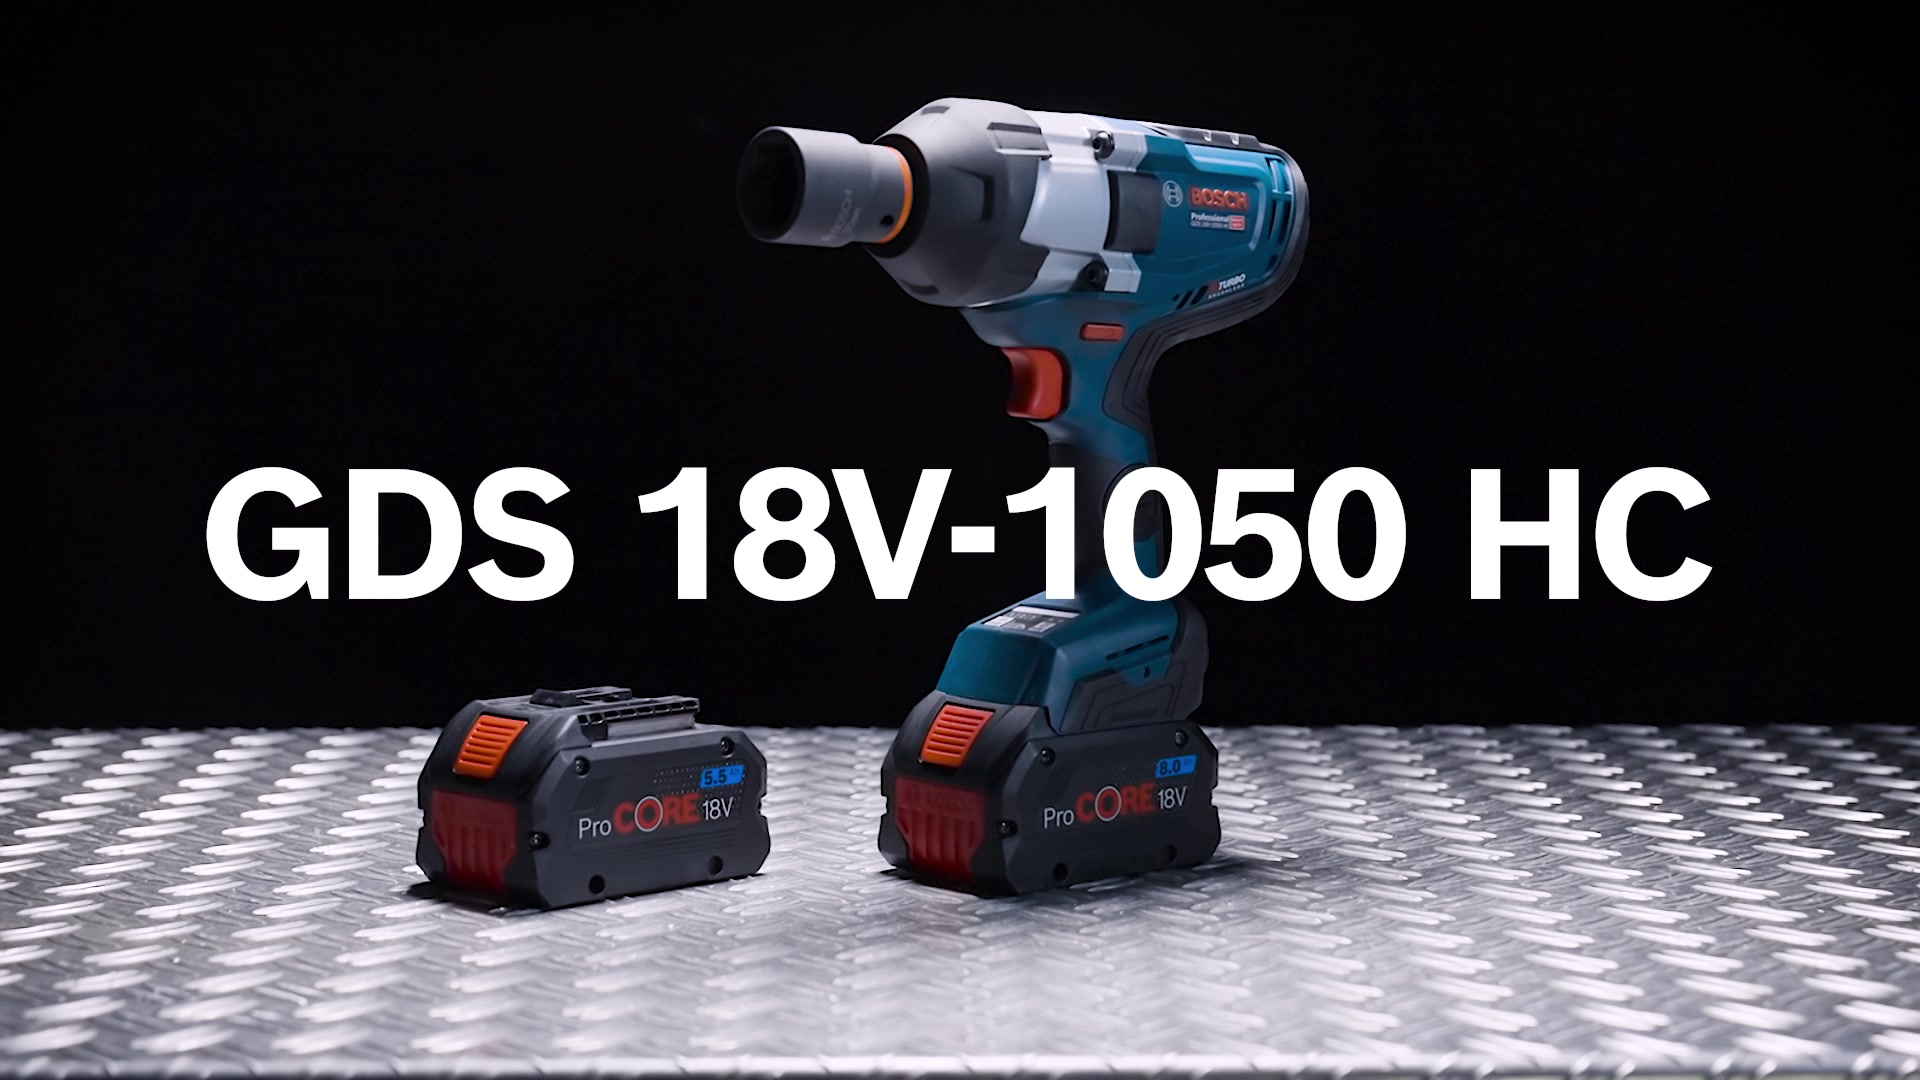 GDS 18V-1050 HC